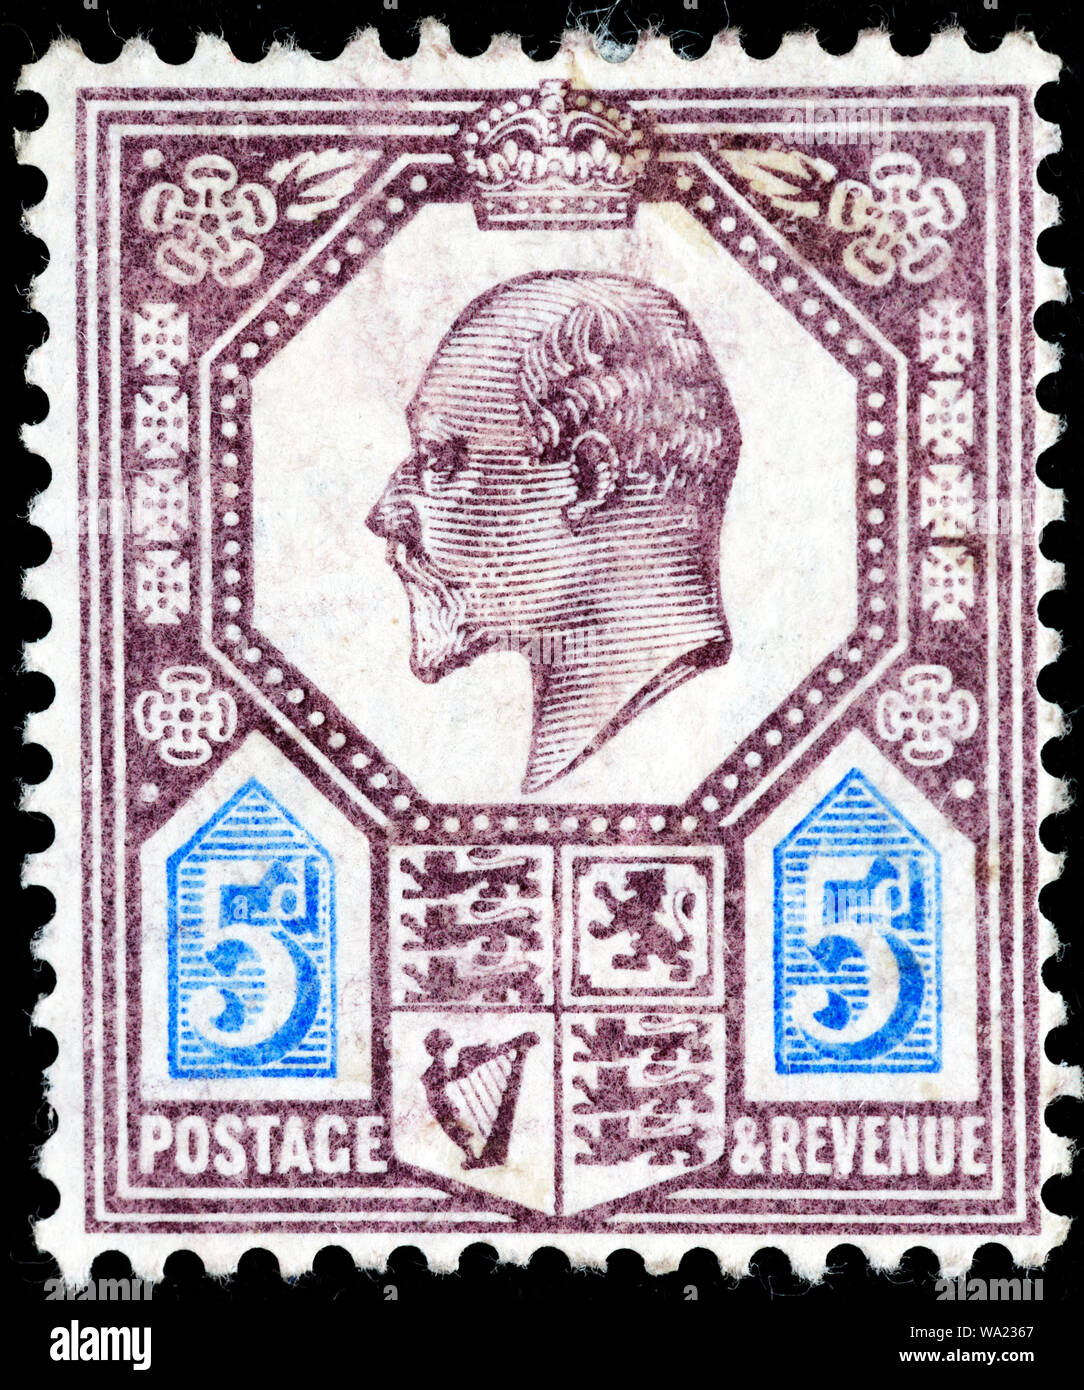 Le roi Édouard VII (1841-1910), timbre-poste, UK, 1902 Banque D'Images